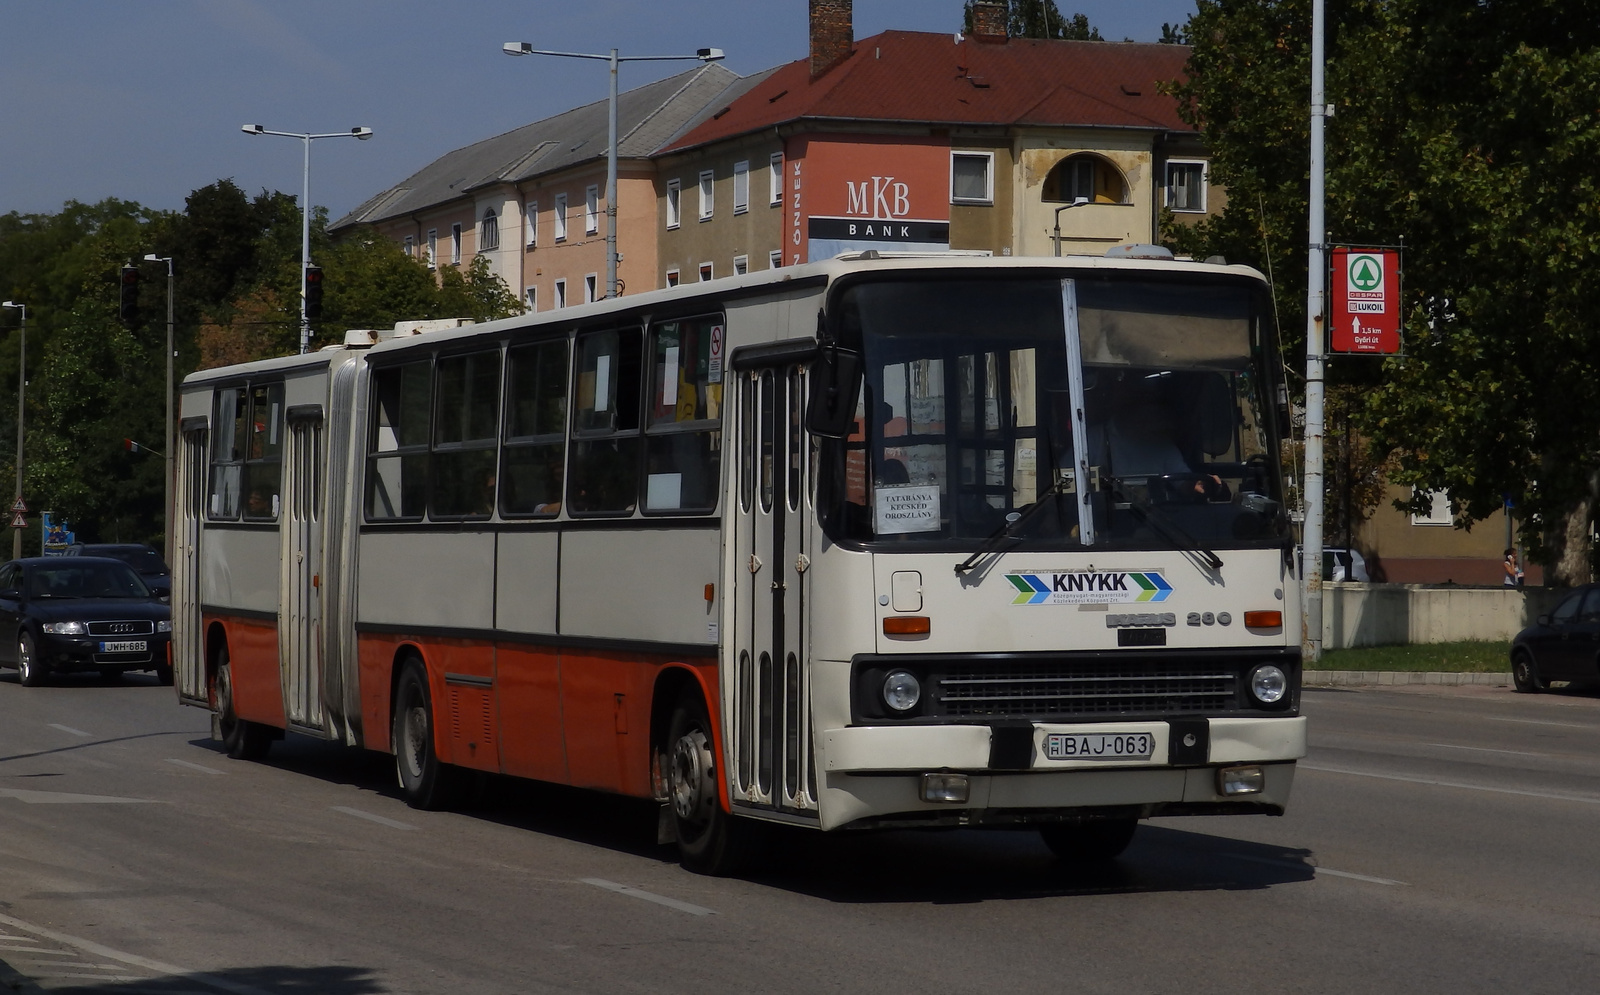 BAJ-063 - Ikarus 280.33M